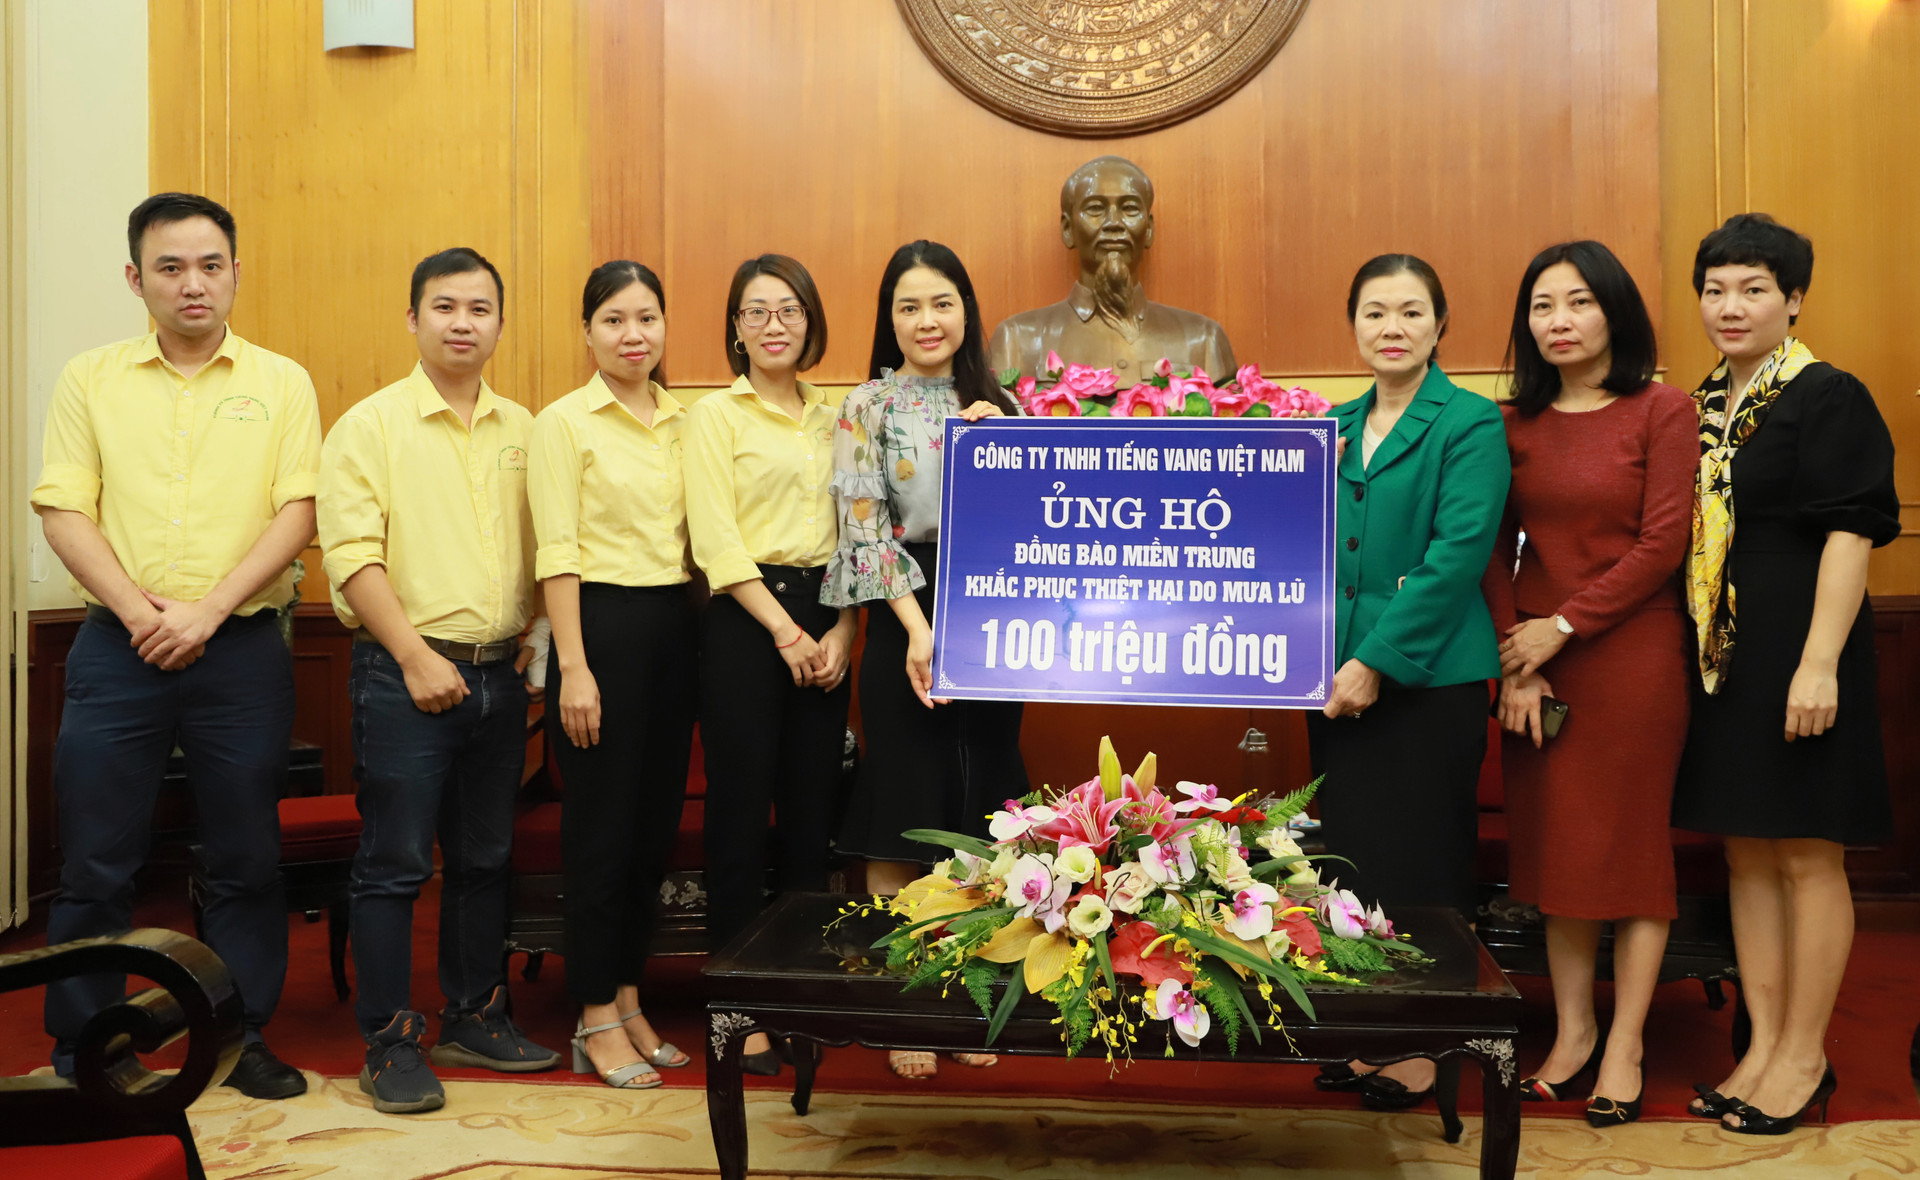 Phó Chủ tịch UBTƯ MTTQ Việt Nam Trương Thị Ngọc Ánh tiếp nhận ủng hộ đồng bào miền Trung từ Công ty TNHH Tiếng Vang.